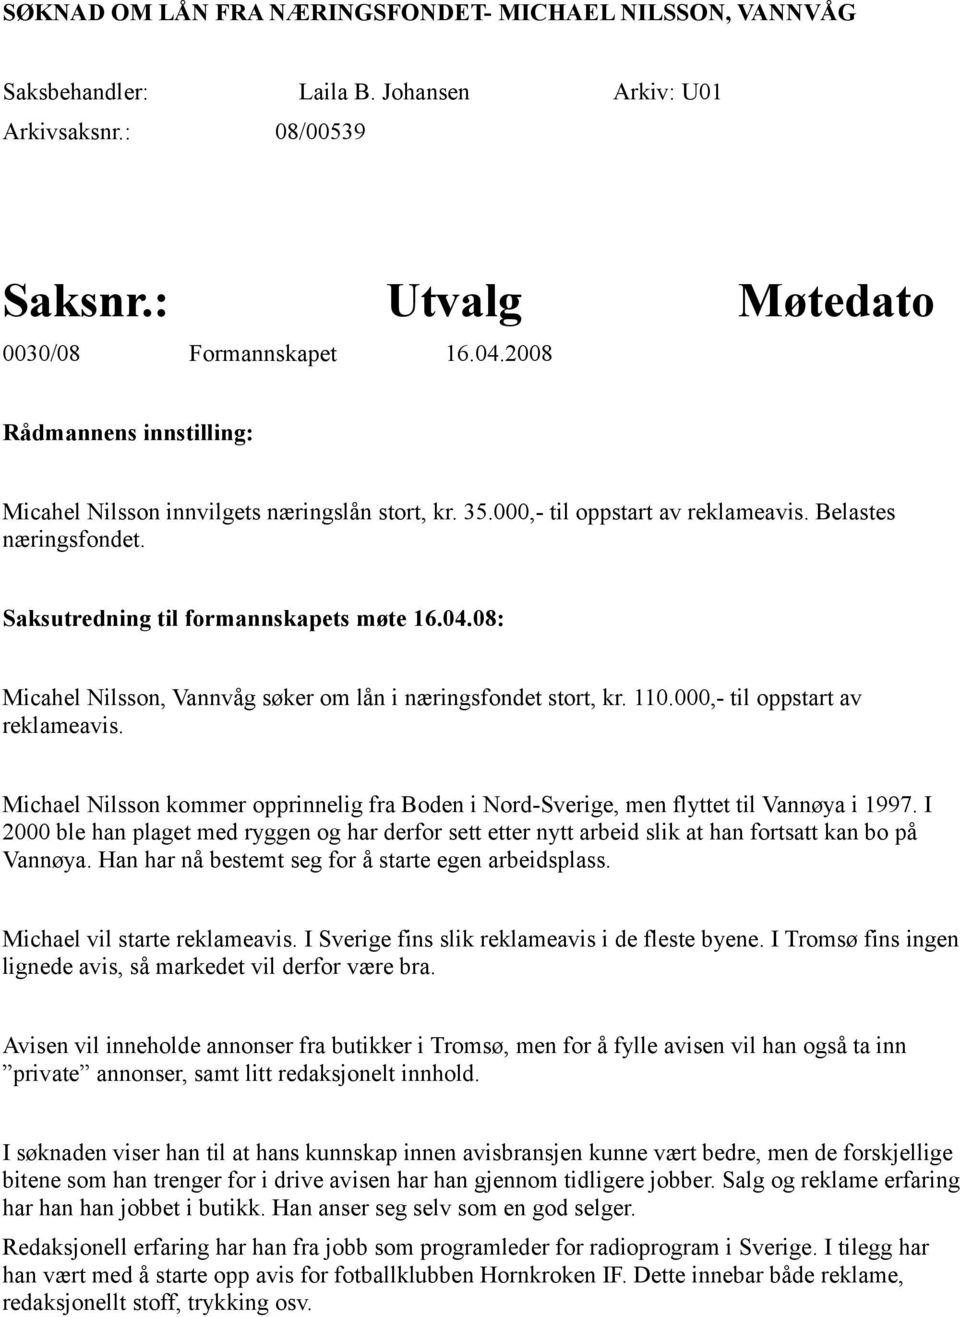 08: Micahel Nilsson, Vannvåg søker om lån i næringsfondet stort, kr. 110.000,- til oppstart av reklameavis. Michael Nilsson kommer opprinnelig fra Boden i Nord-Sverige, men flyttet til Vannøya i 1997.